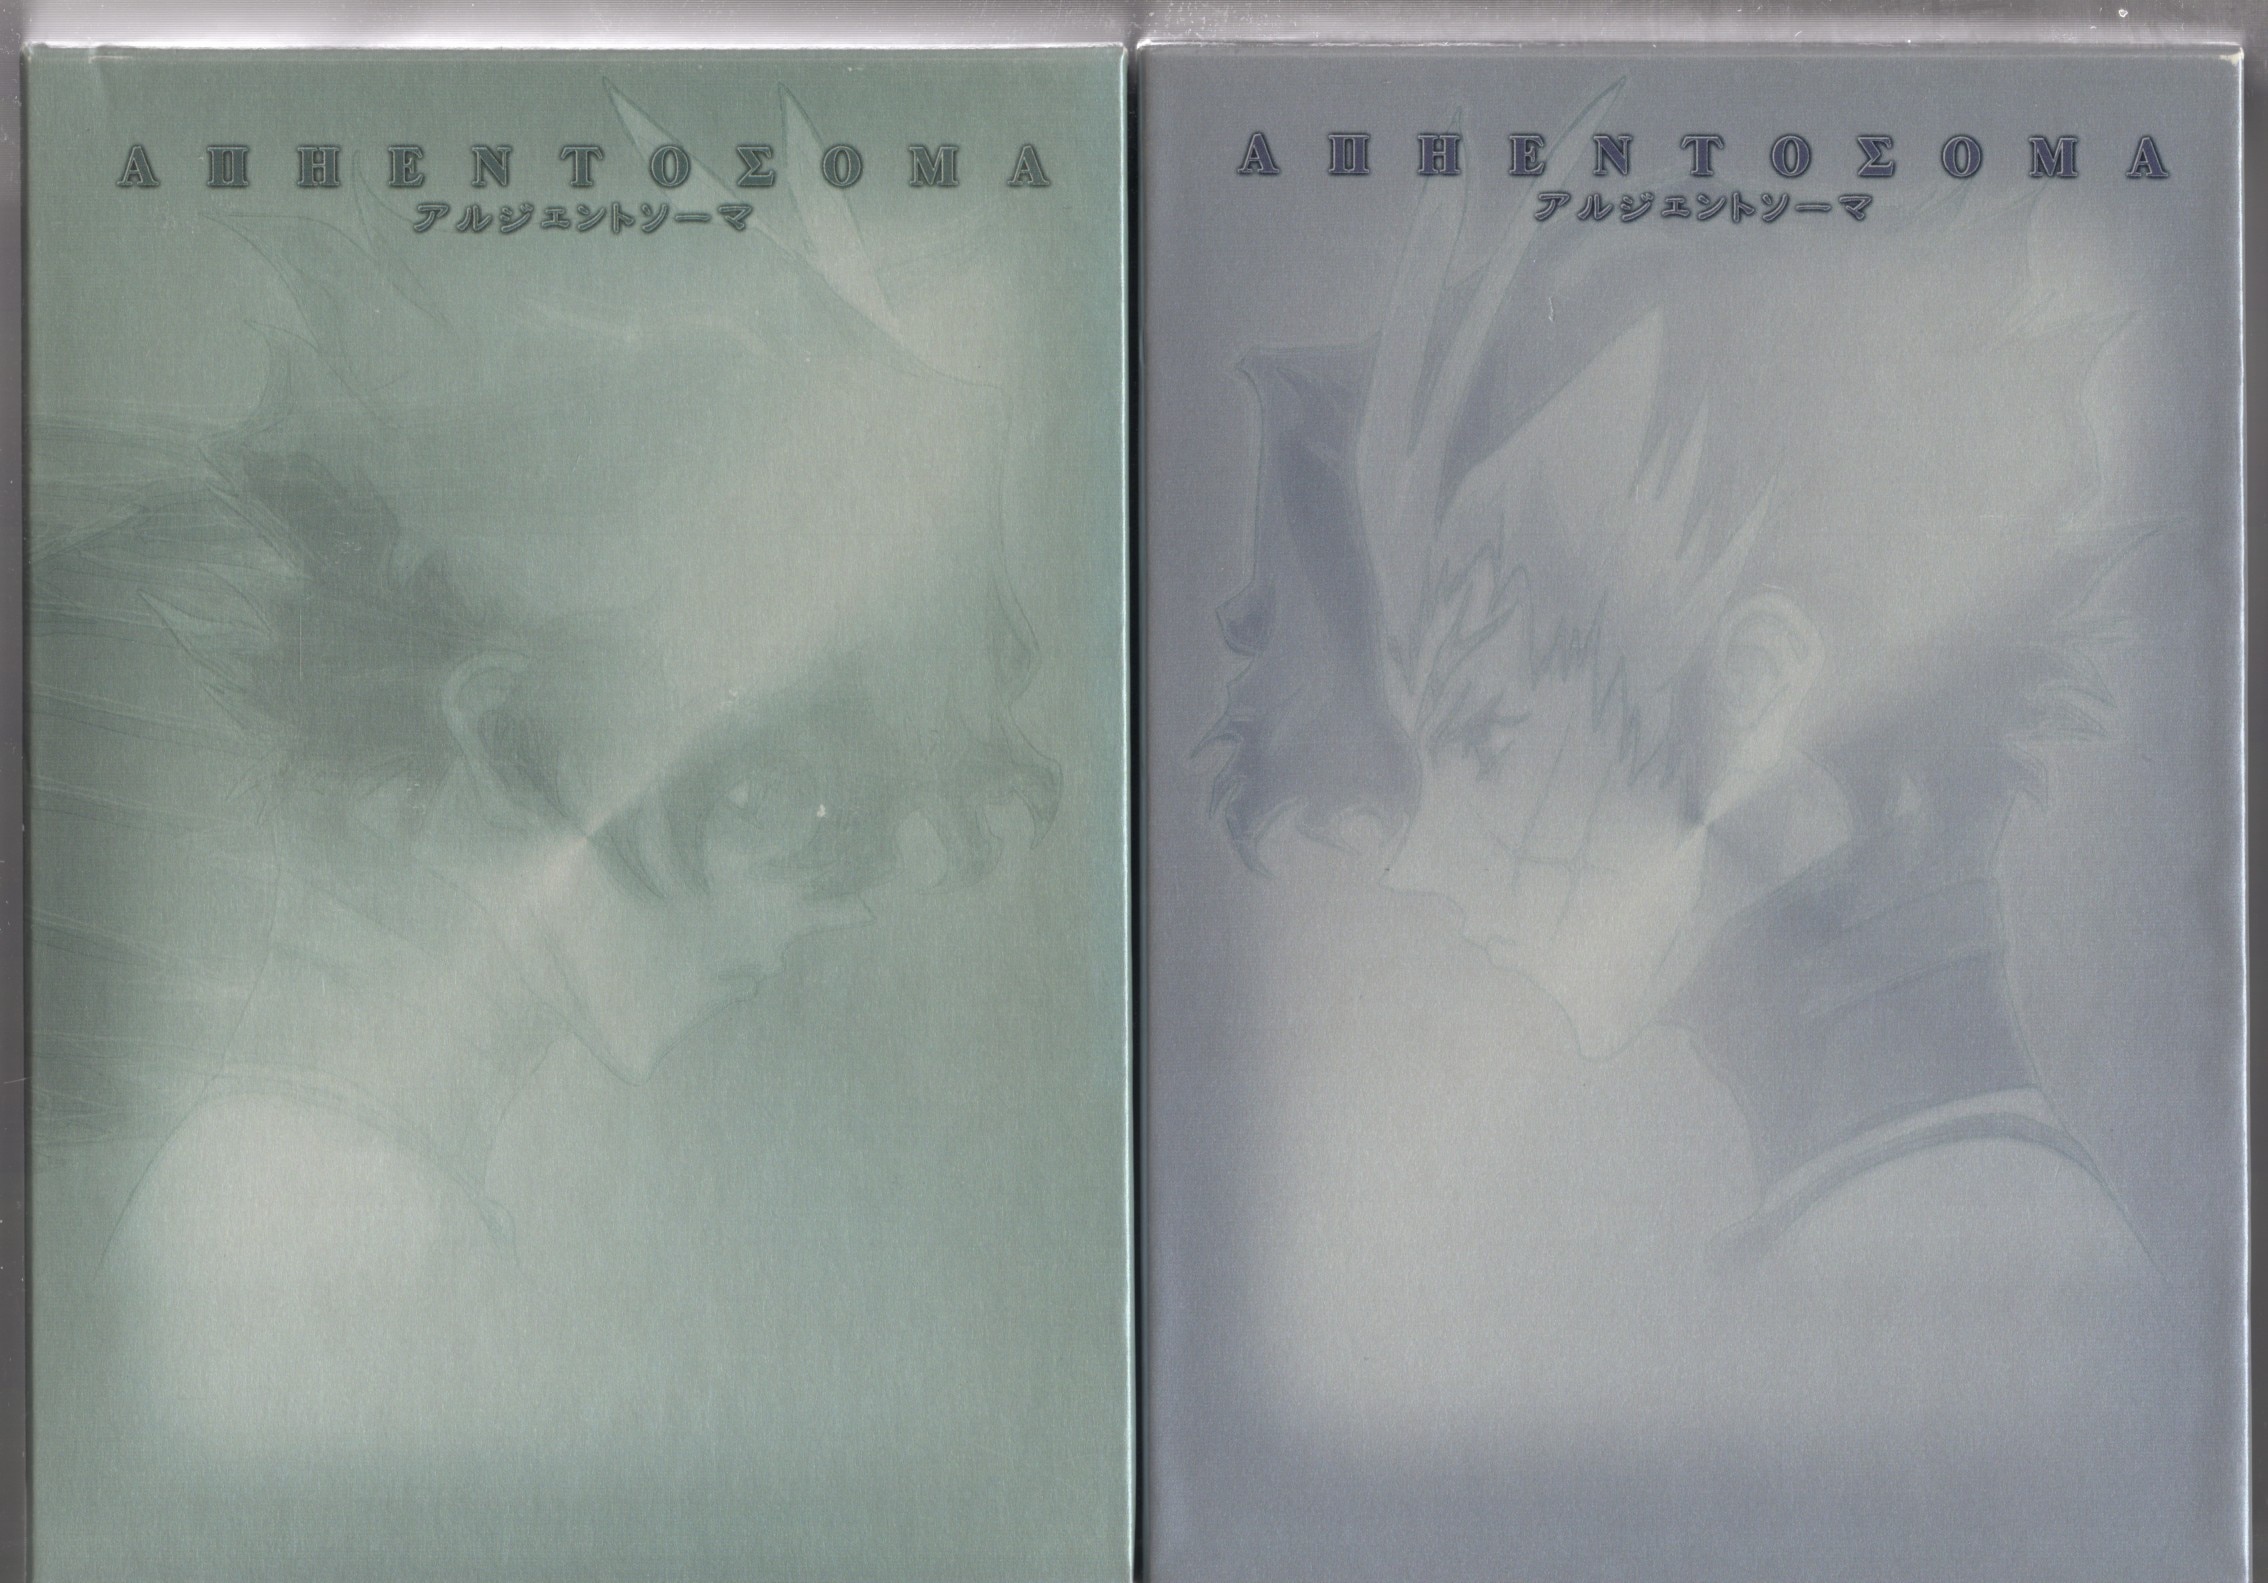 アルジェントソーマ　DVD（BOX付き）　全13巻